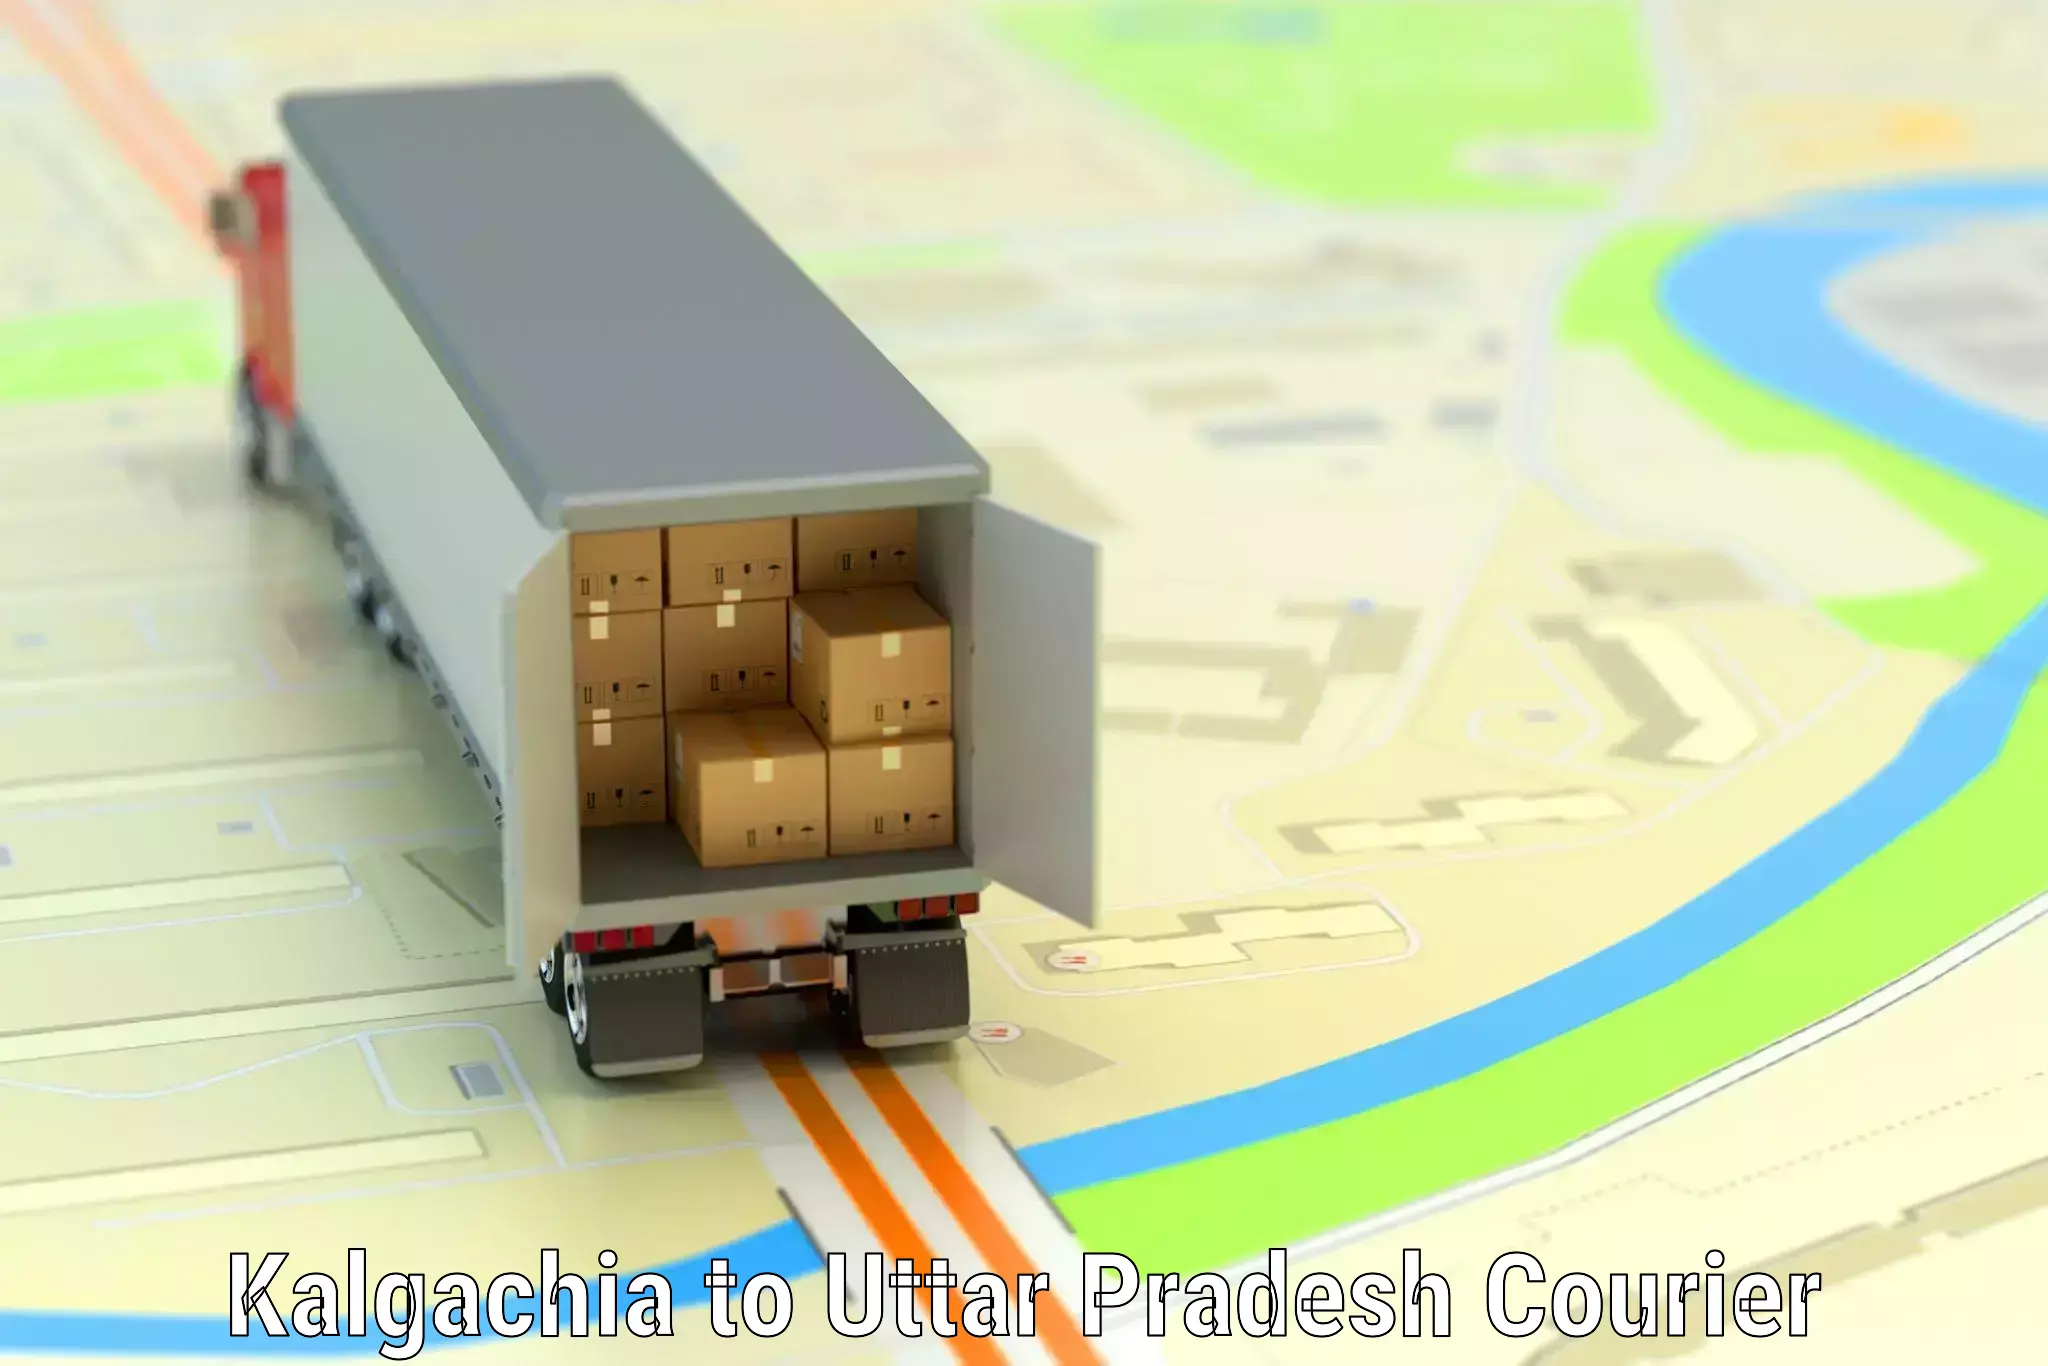 Baggage transport logistics in Kalgachia to Balrampur